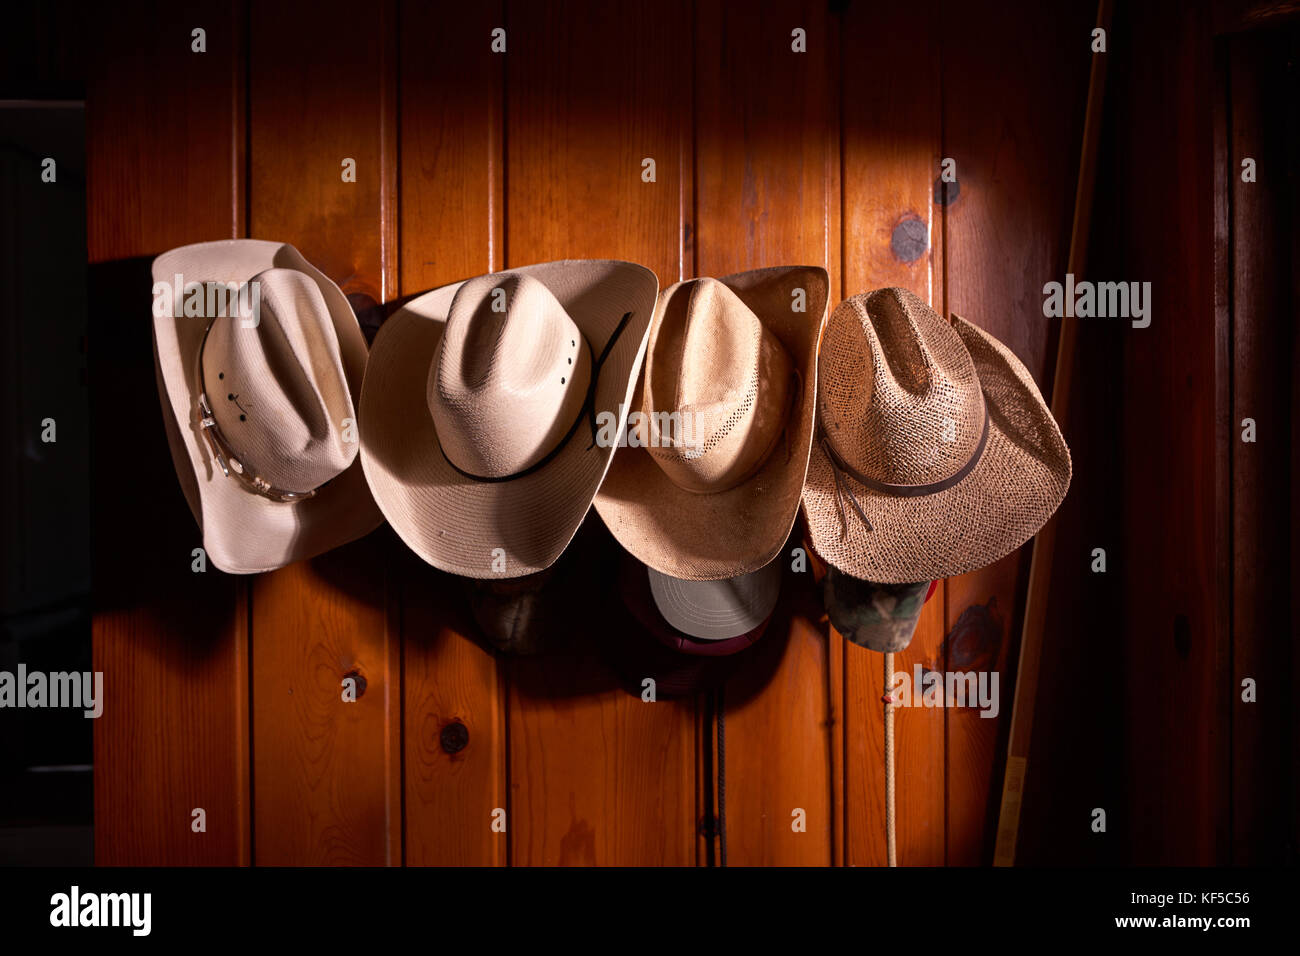 Vier cowboy Hüte in Reihe auf holzgetäfelten Wand aufgehängt  Stockfotografie - Alamy